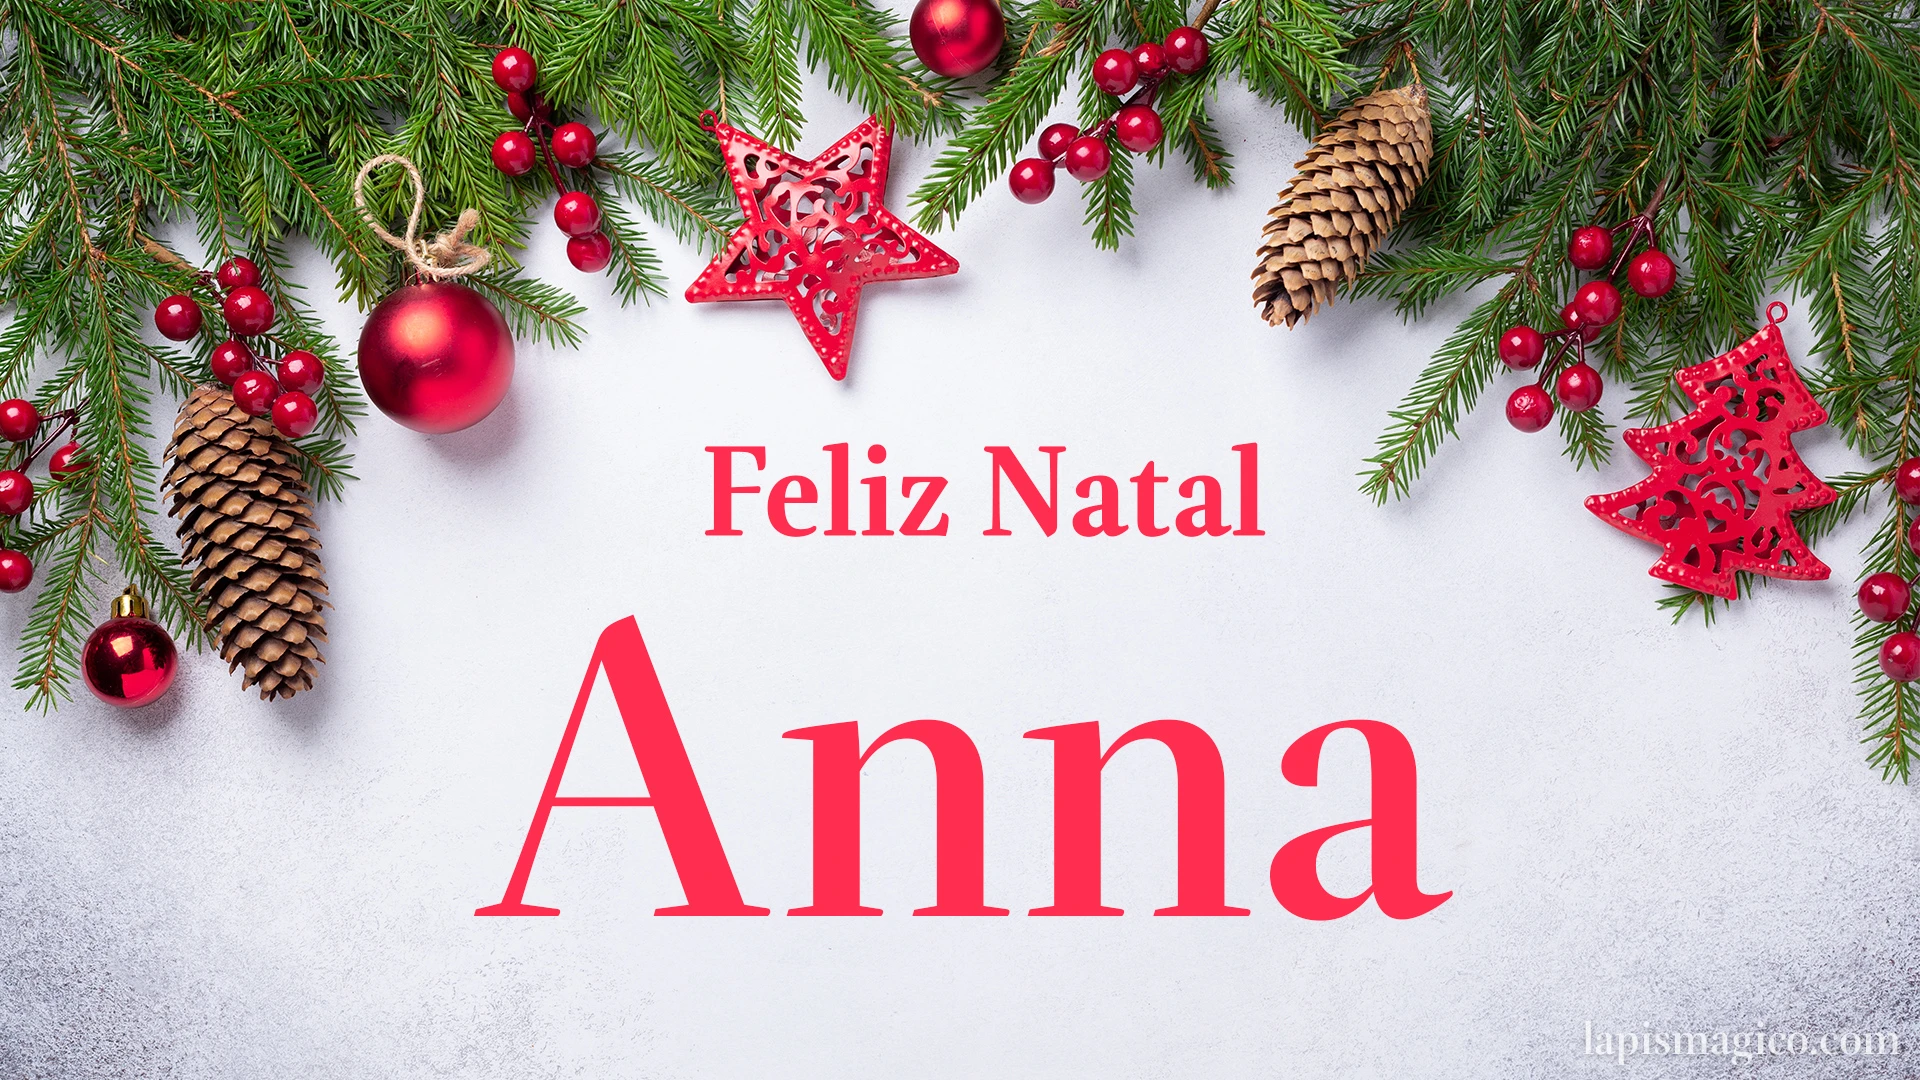 Oh Anna, cinco postais de Feliz Natal Postal com o teu nome